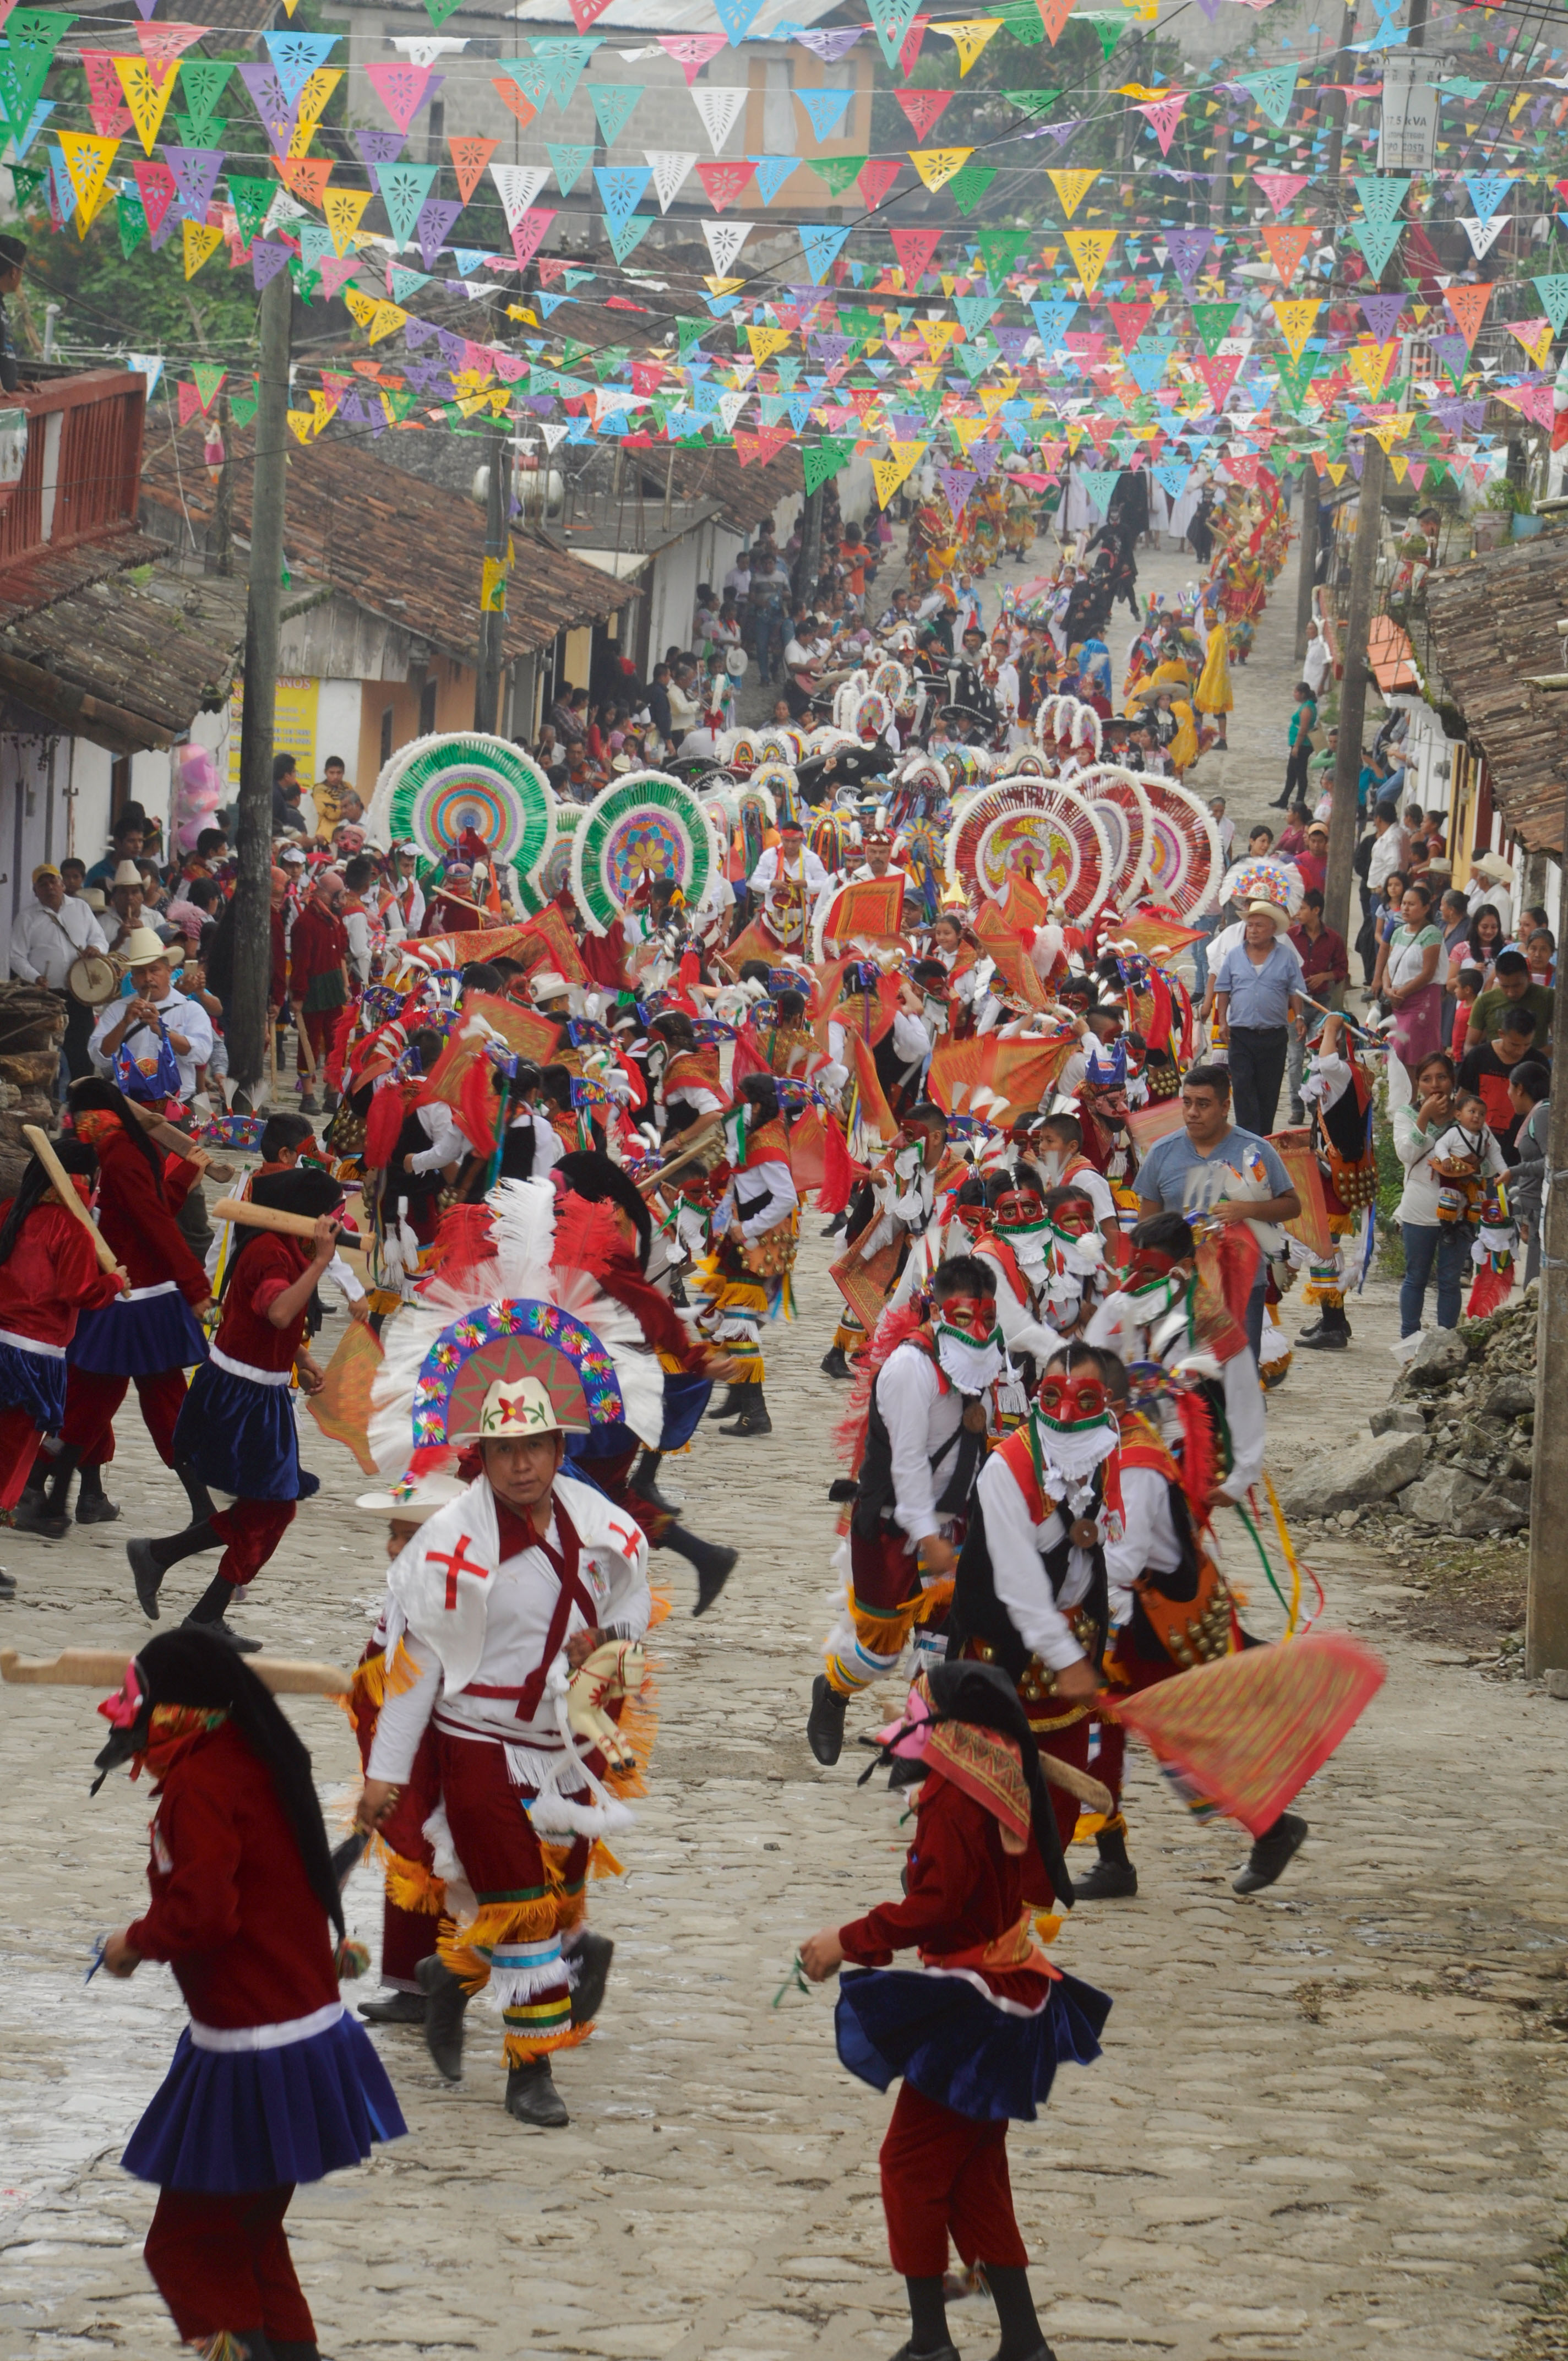  La multitudinaria procesión de danzantes de distintas tradiciones en San Miguel Tzinacapan.